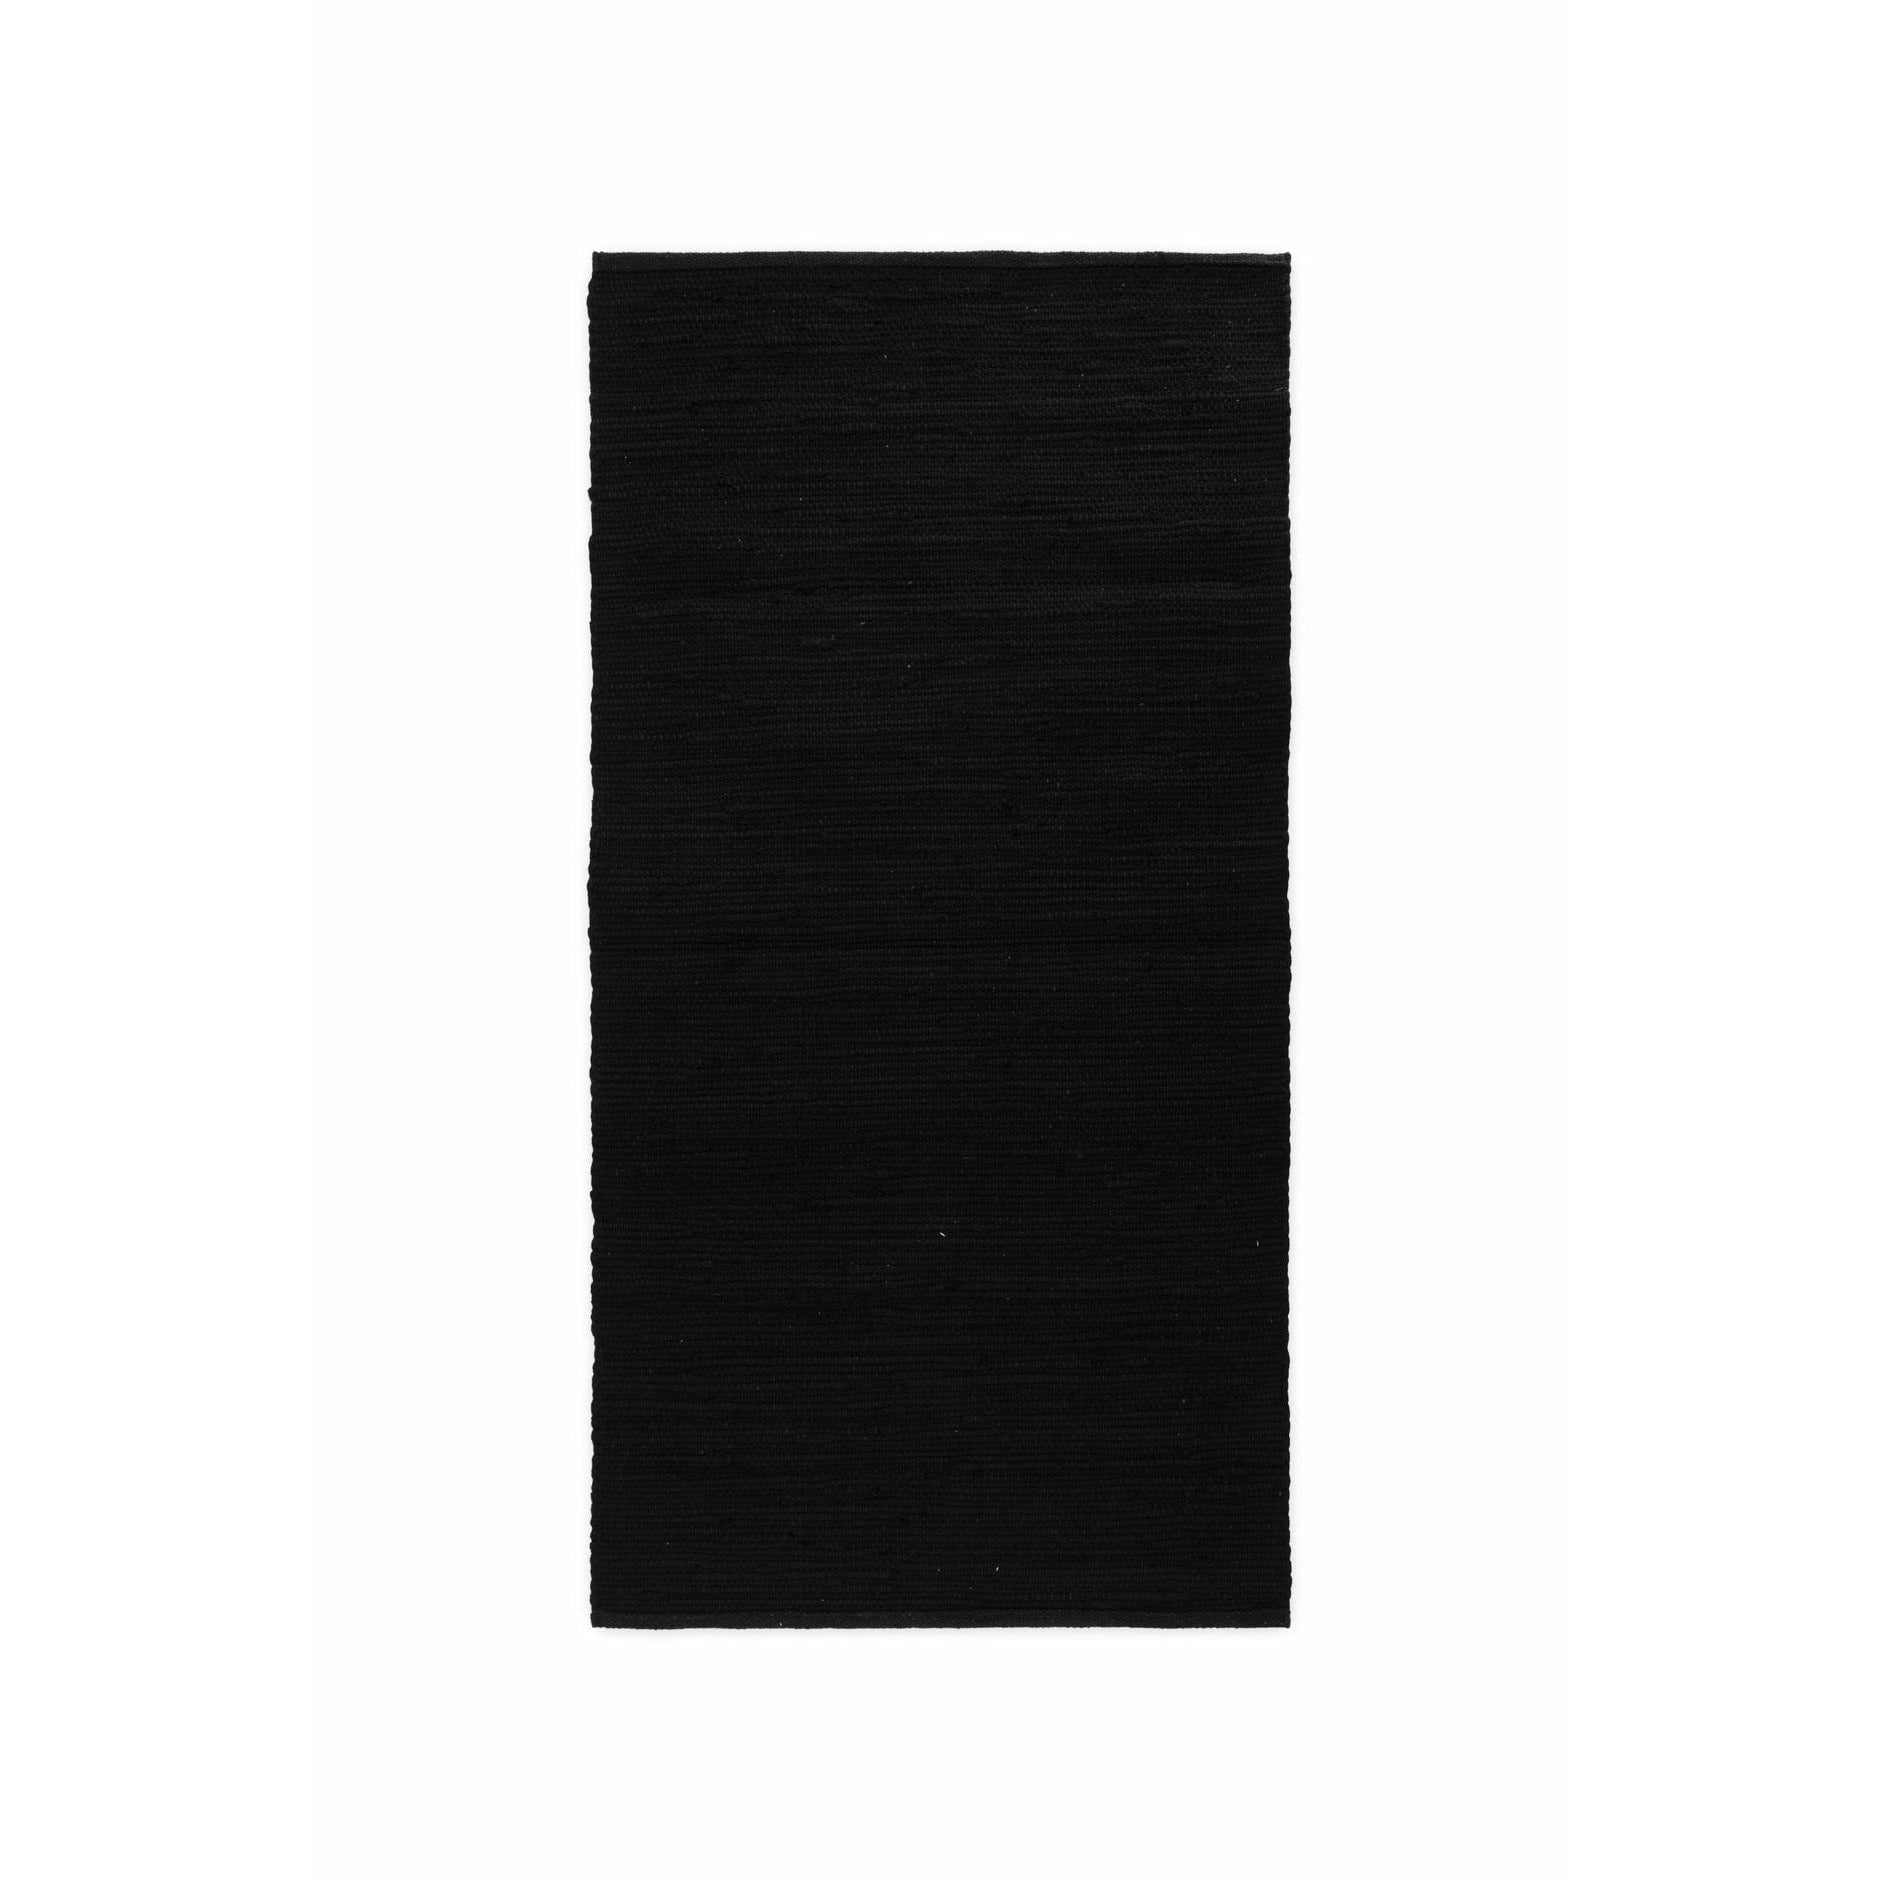 Rug Solid Bomuldstæppe sort, 170 x 240 cm